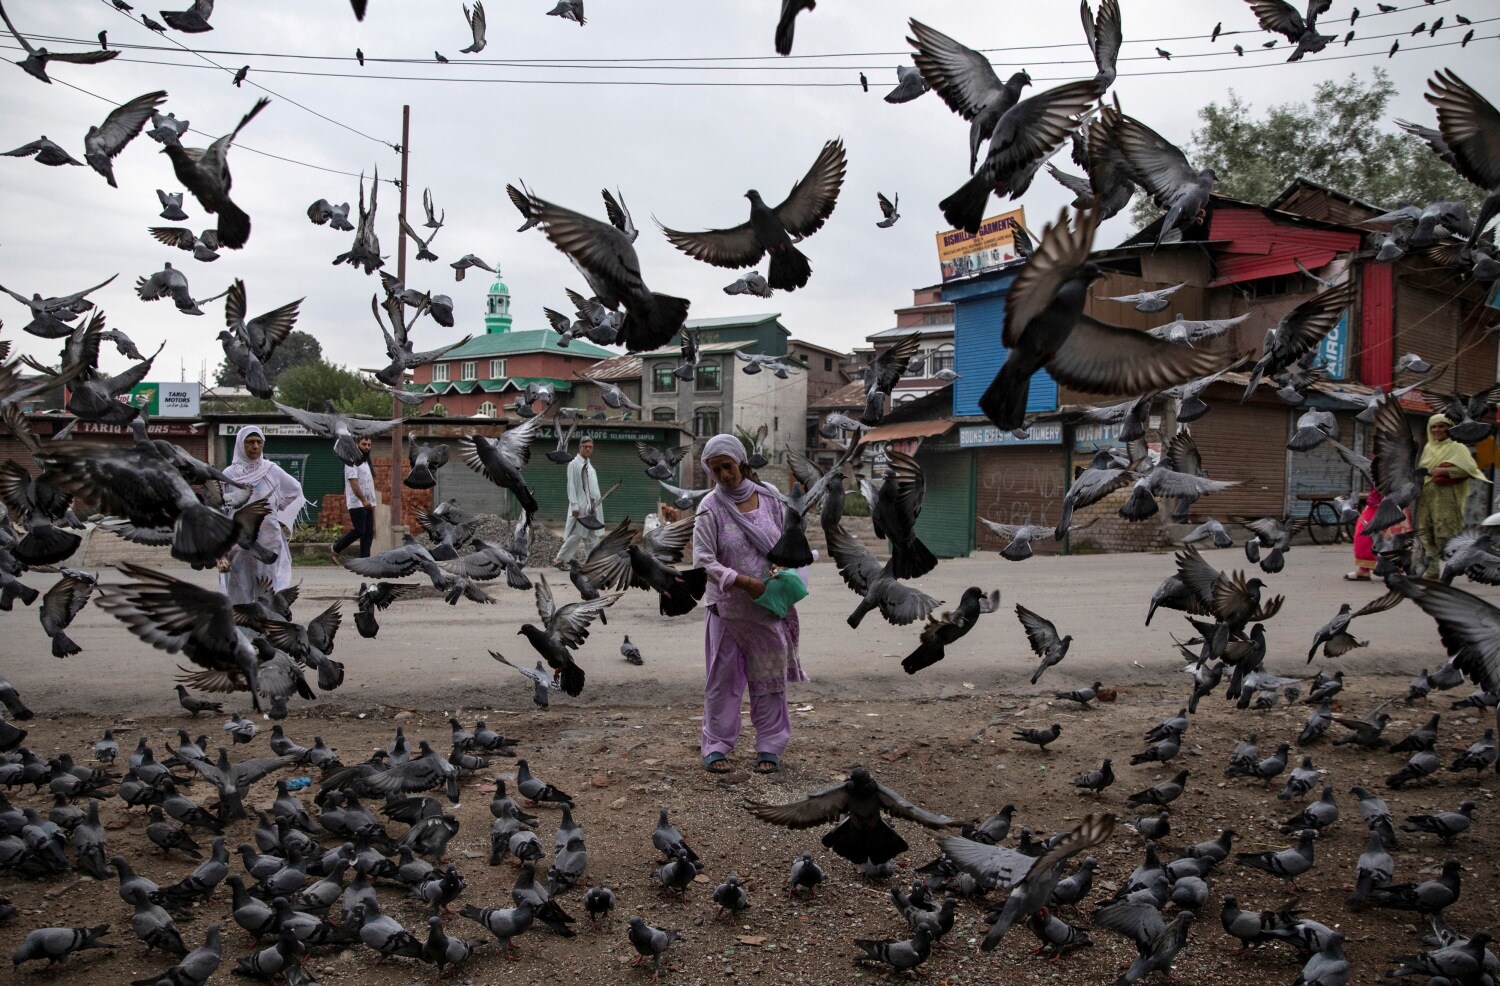 Una mujer de Cachemira alimenta palomas en una calle durante las restricciones después del desmantelamiento del estatus constitucional especial para Cachemira por parte del gobierno, en Srinagar,